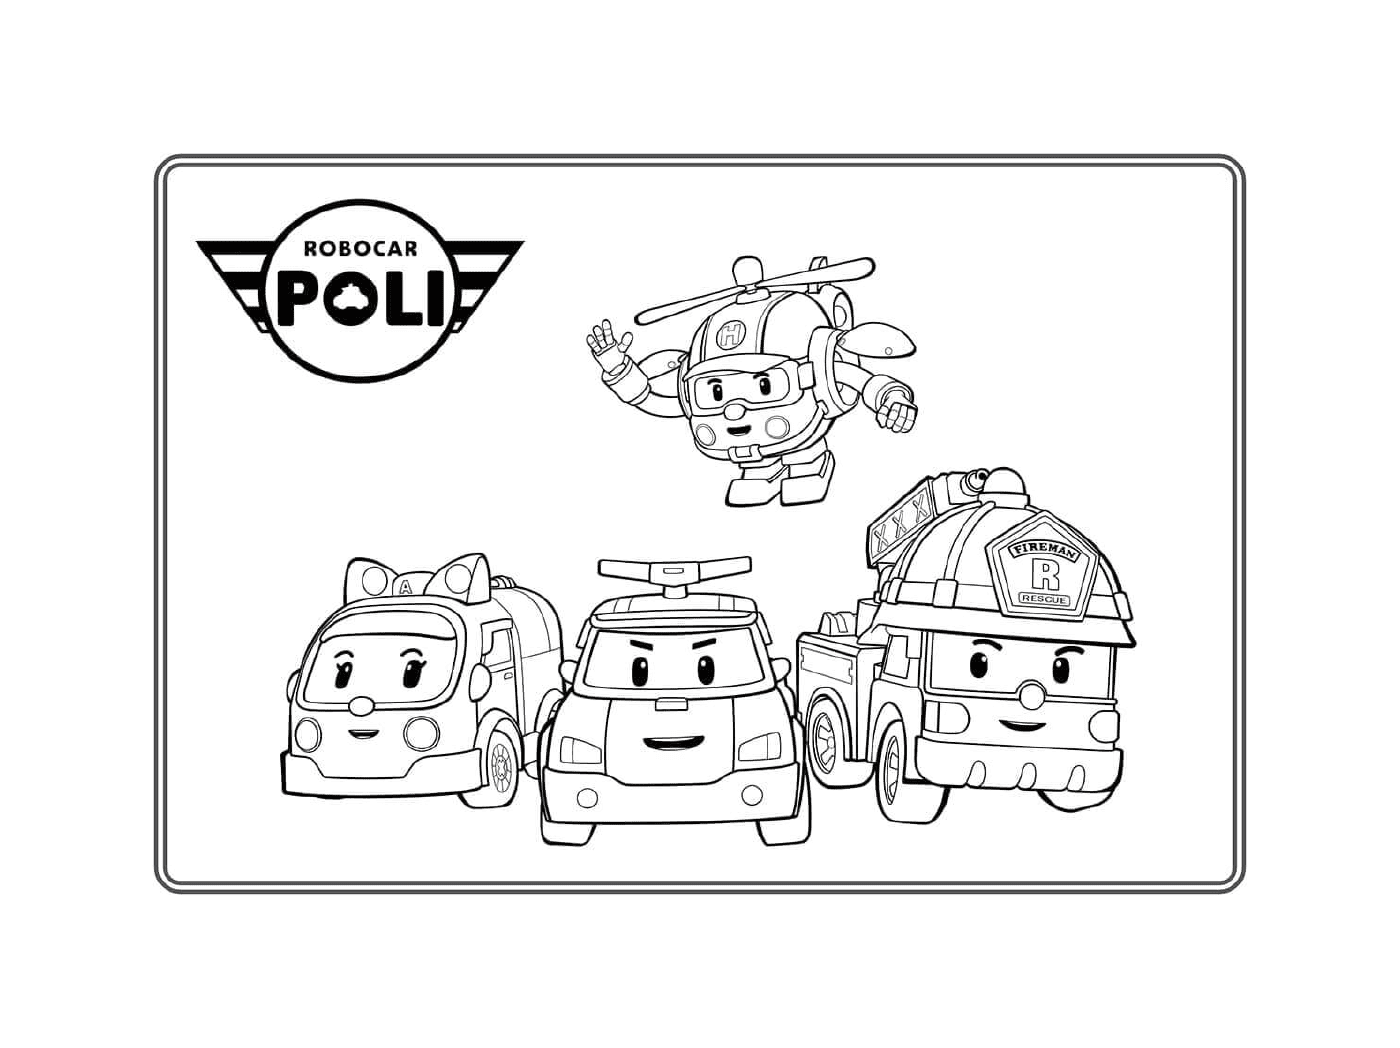   Ambulance, police, pompier et hélicoptère Robocar Poli 